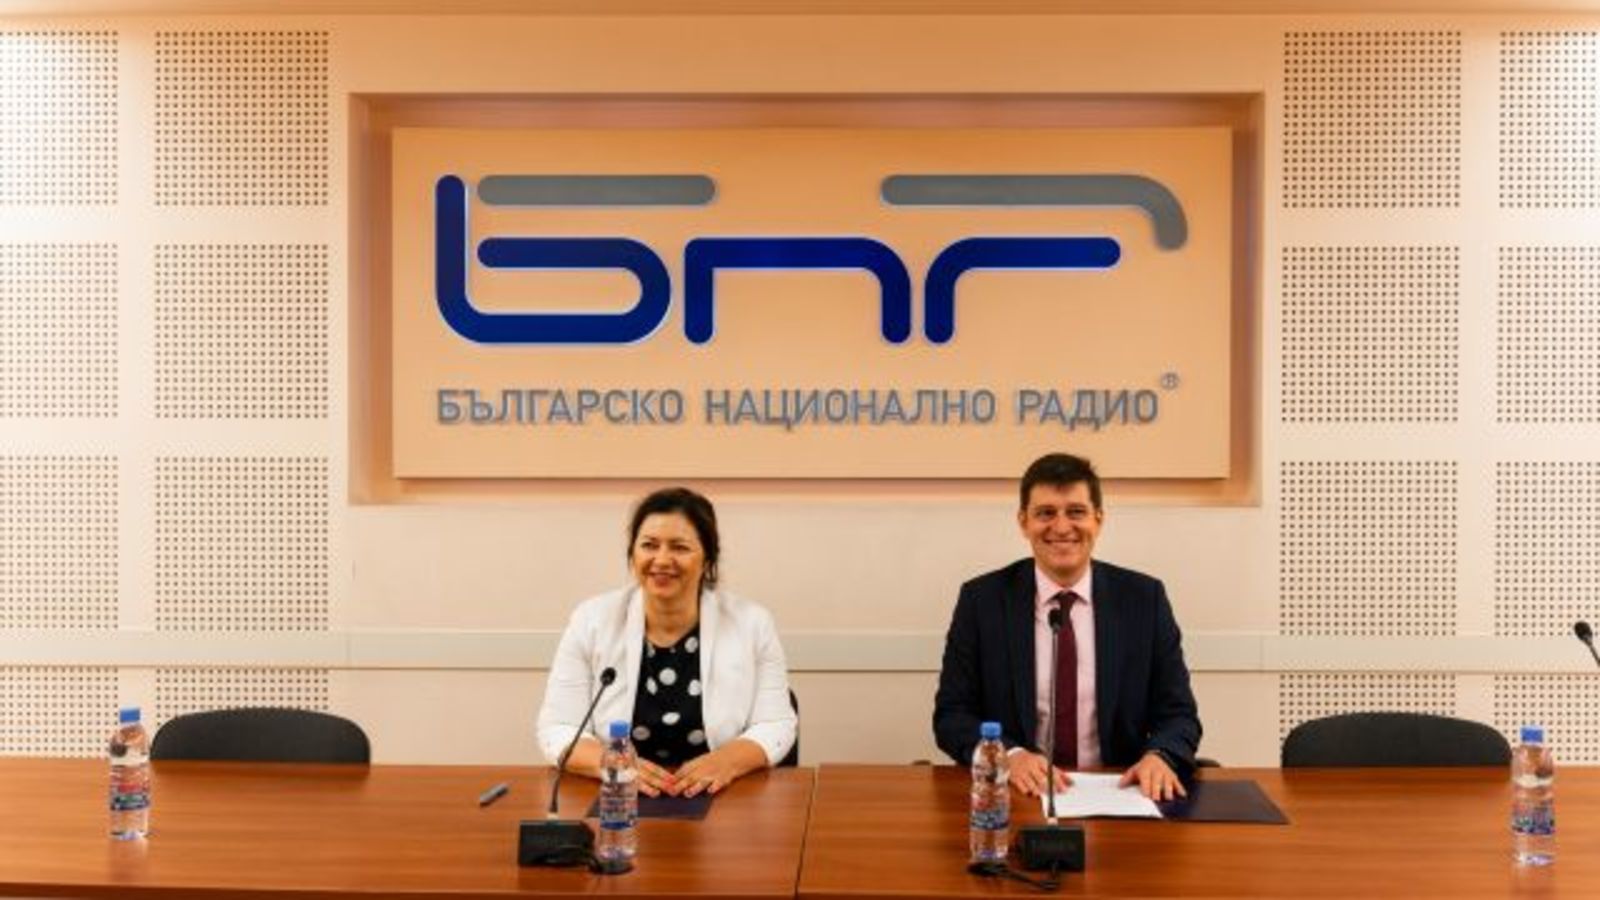 Държавният културен институт към Министъра на външните работи и Българското национално радио сключиха договор за сътрудничество